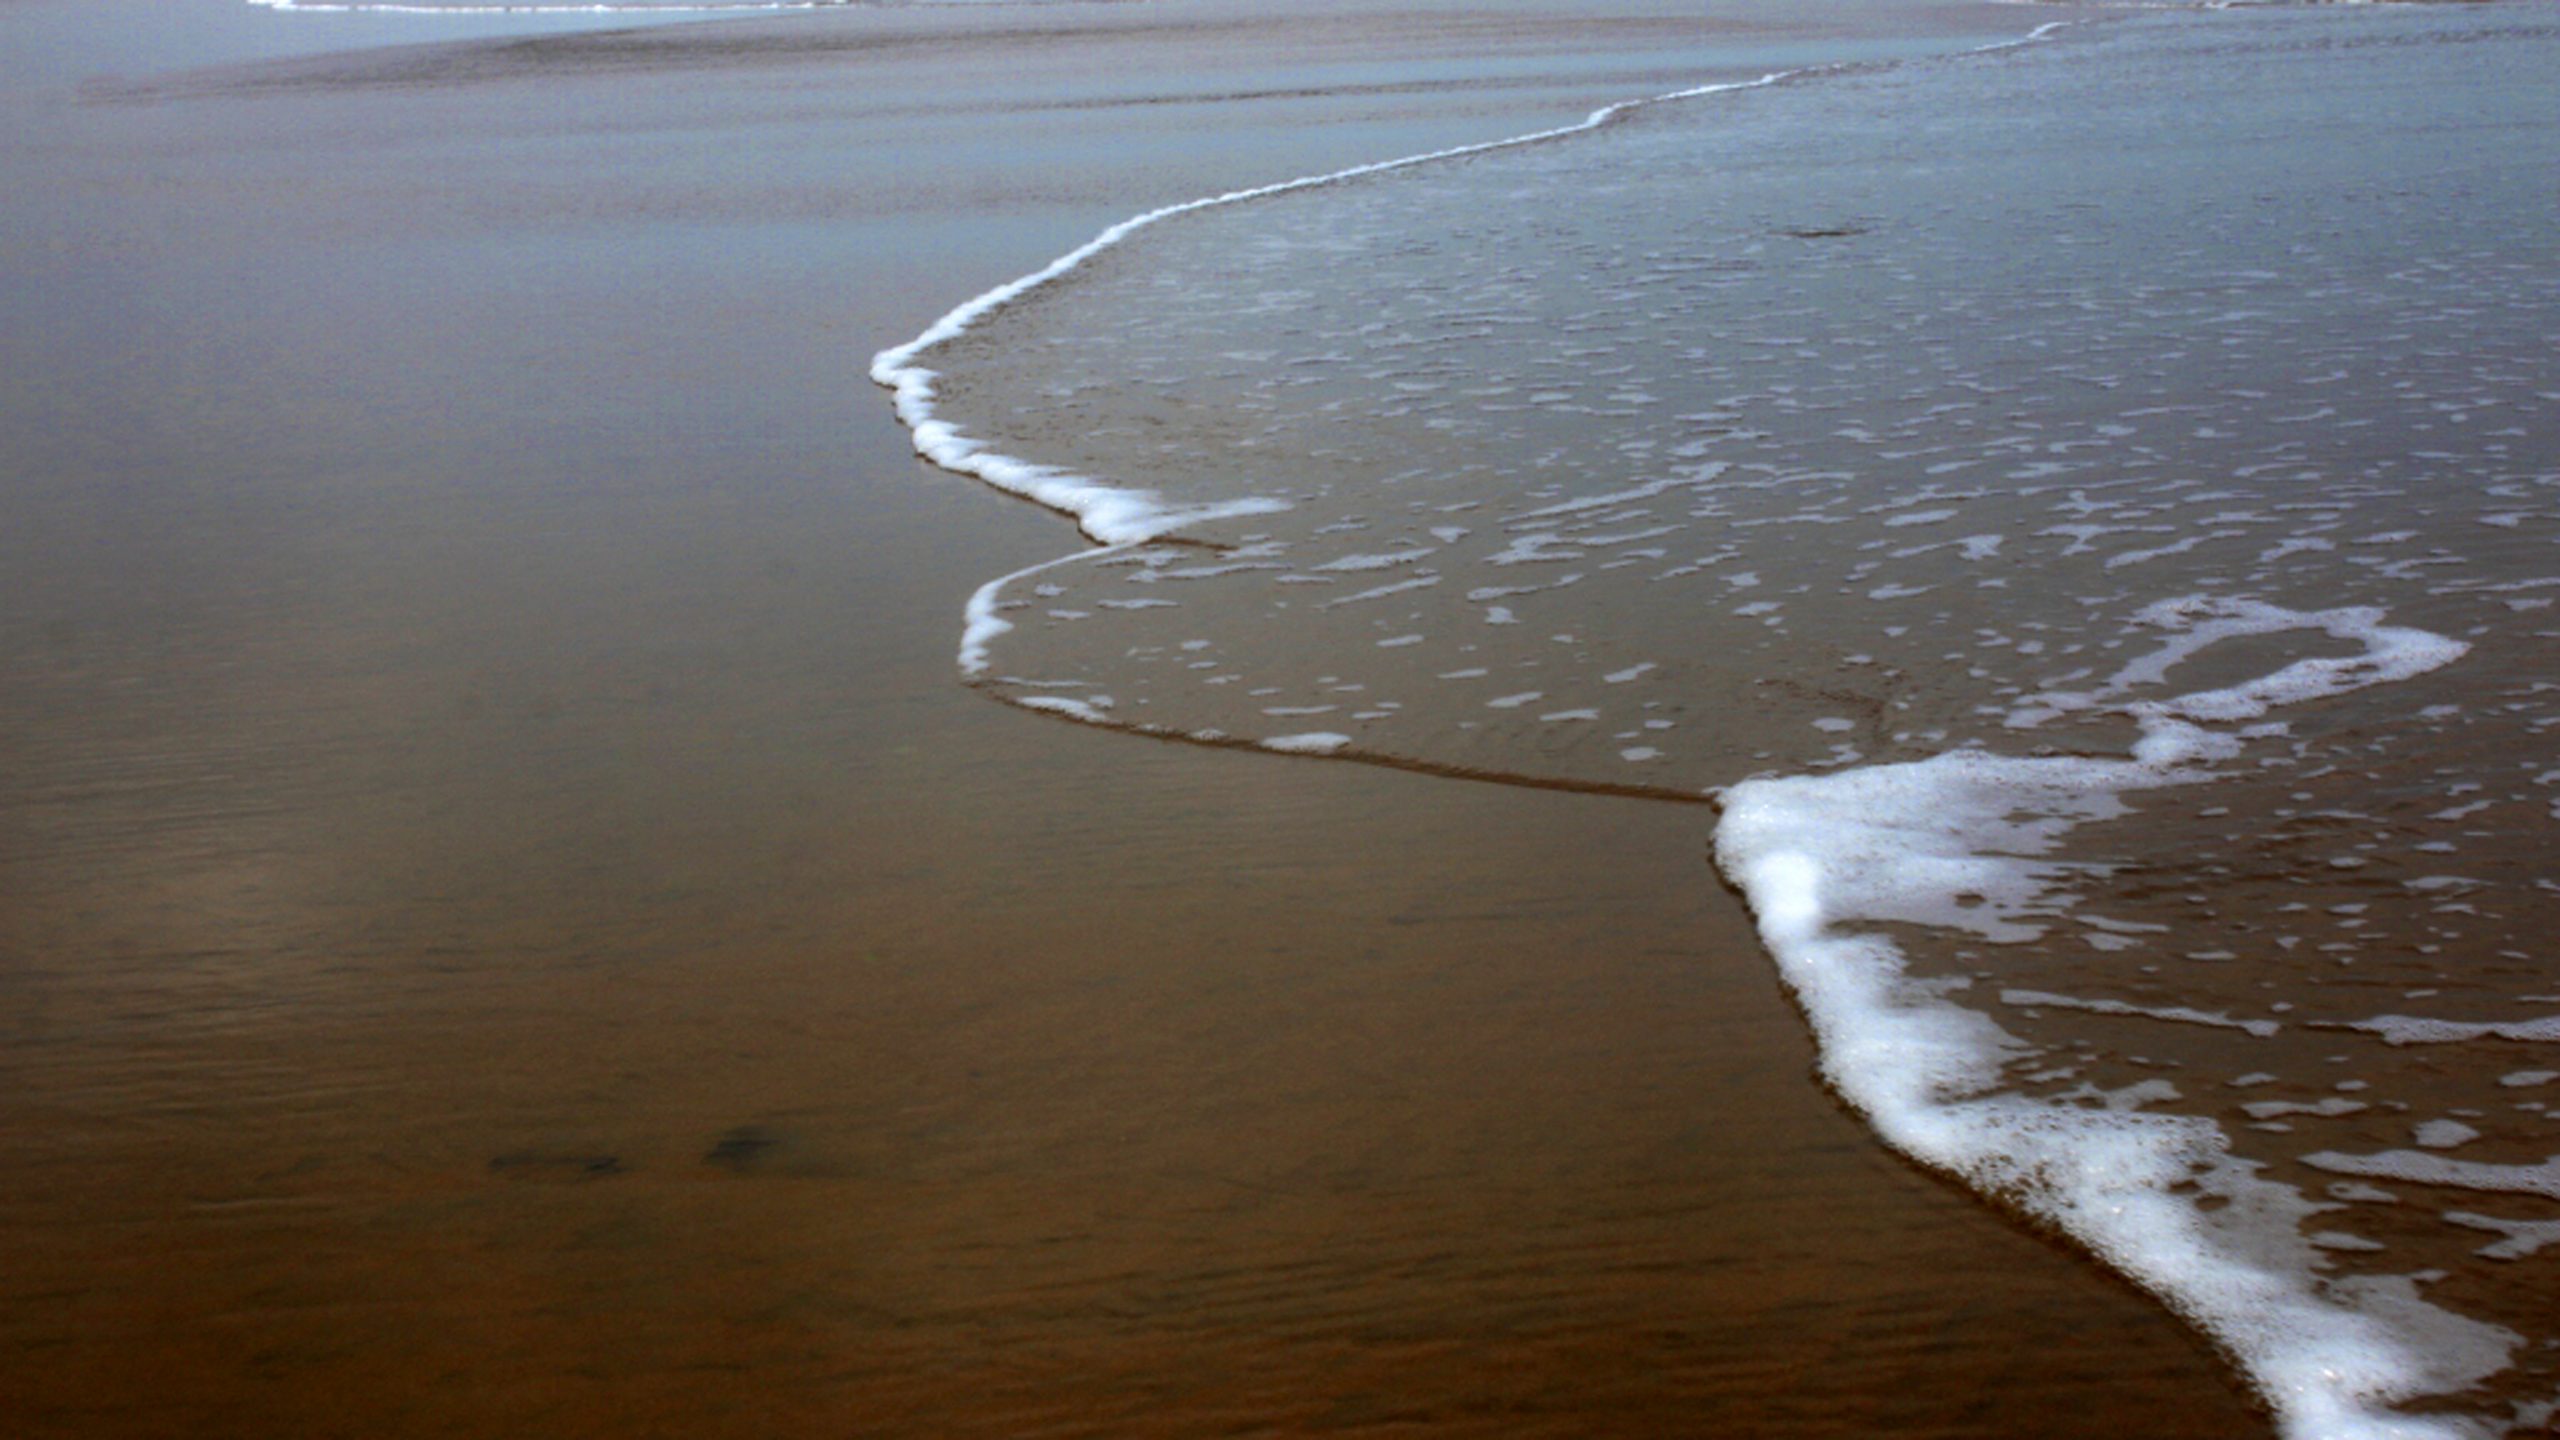 Waves reaching the beach